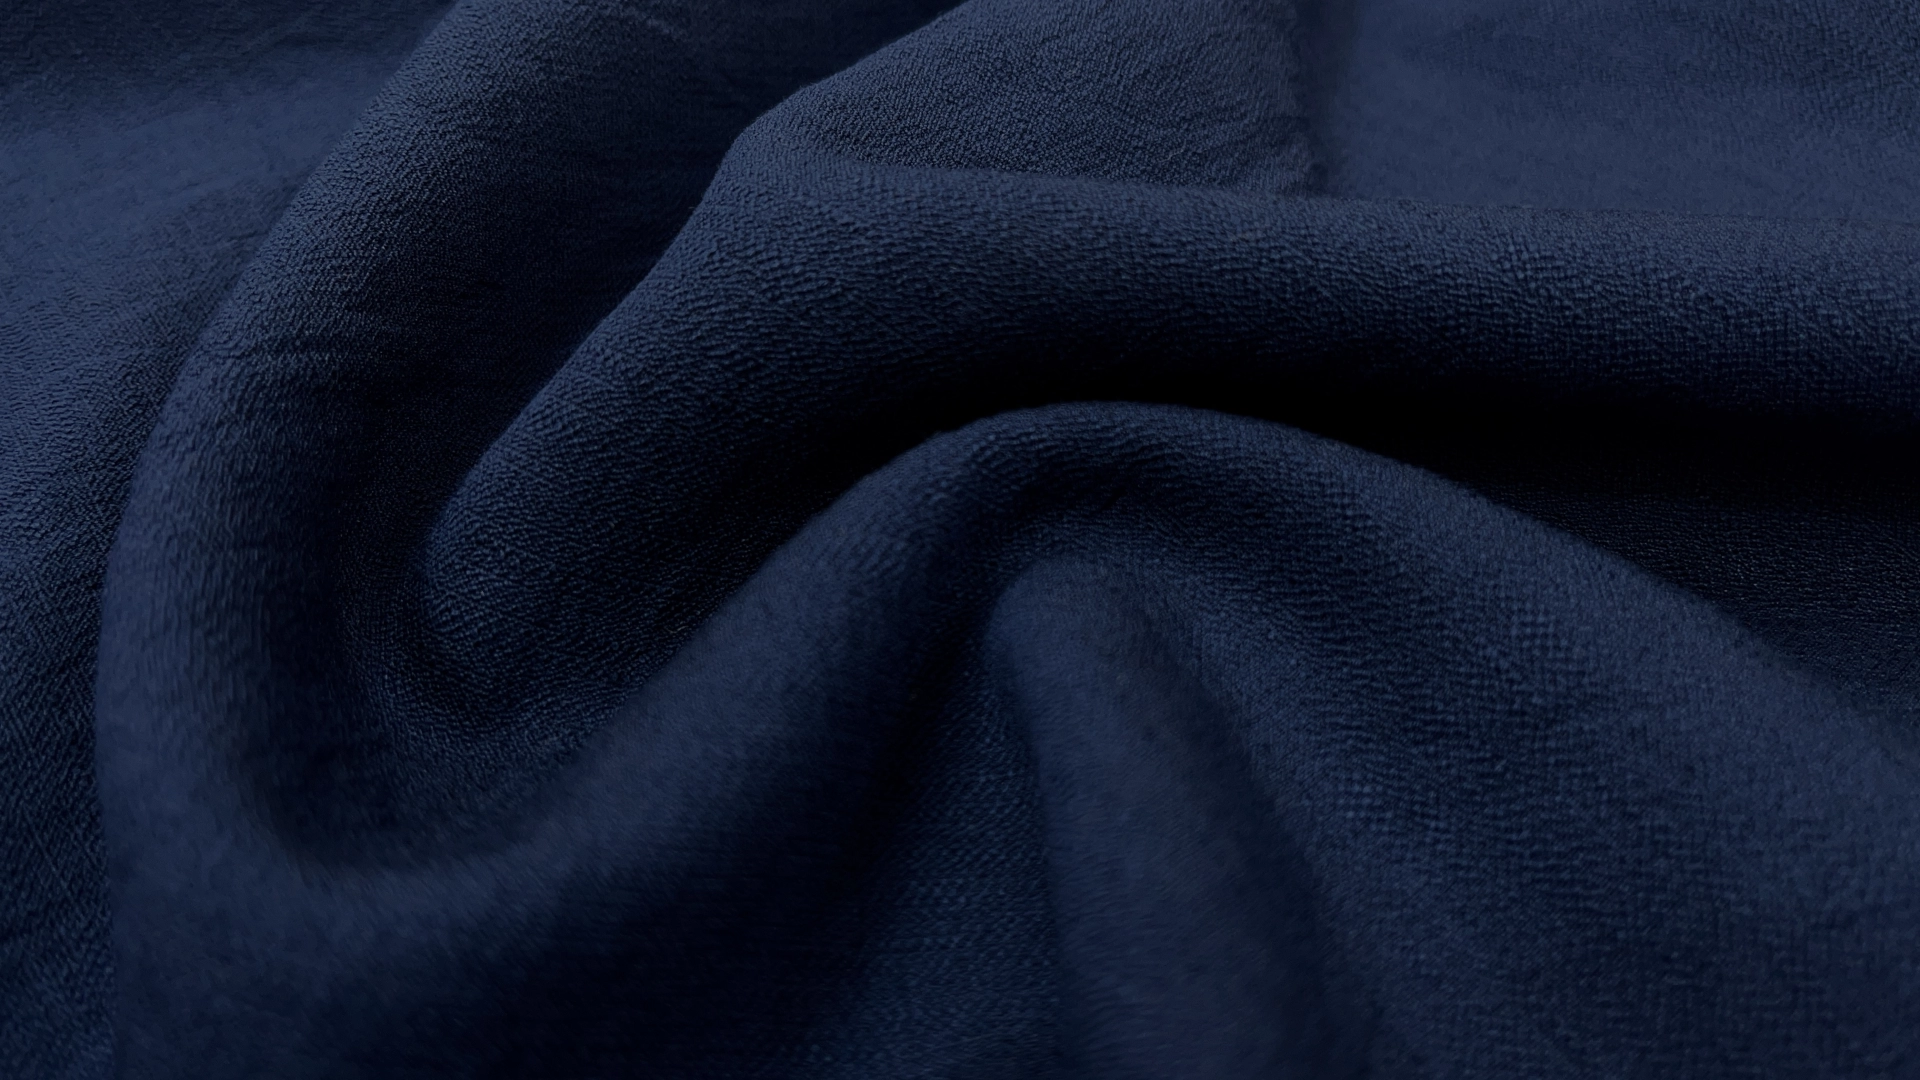 Плательный хлопок крэш синего цвета. Имеет жаккардовую выработку, устойчив к сминанию, совершенно не светится. Подойдет для пошива летнего платья, широких брюк, рубашки, свободных шорт с топом.